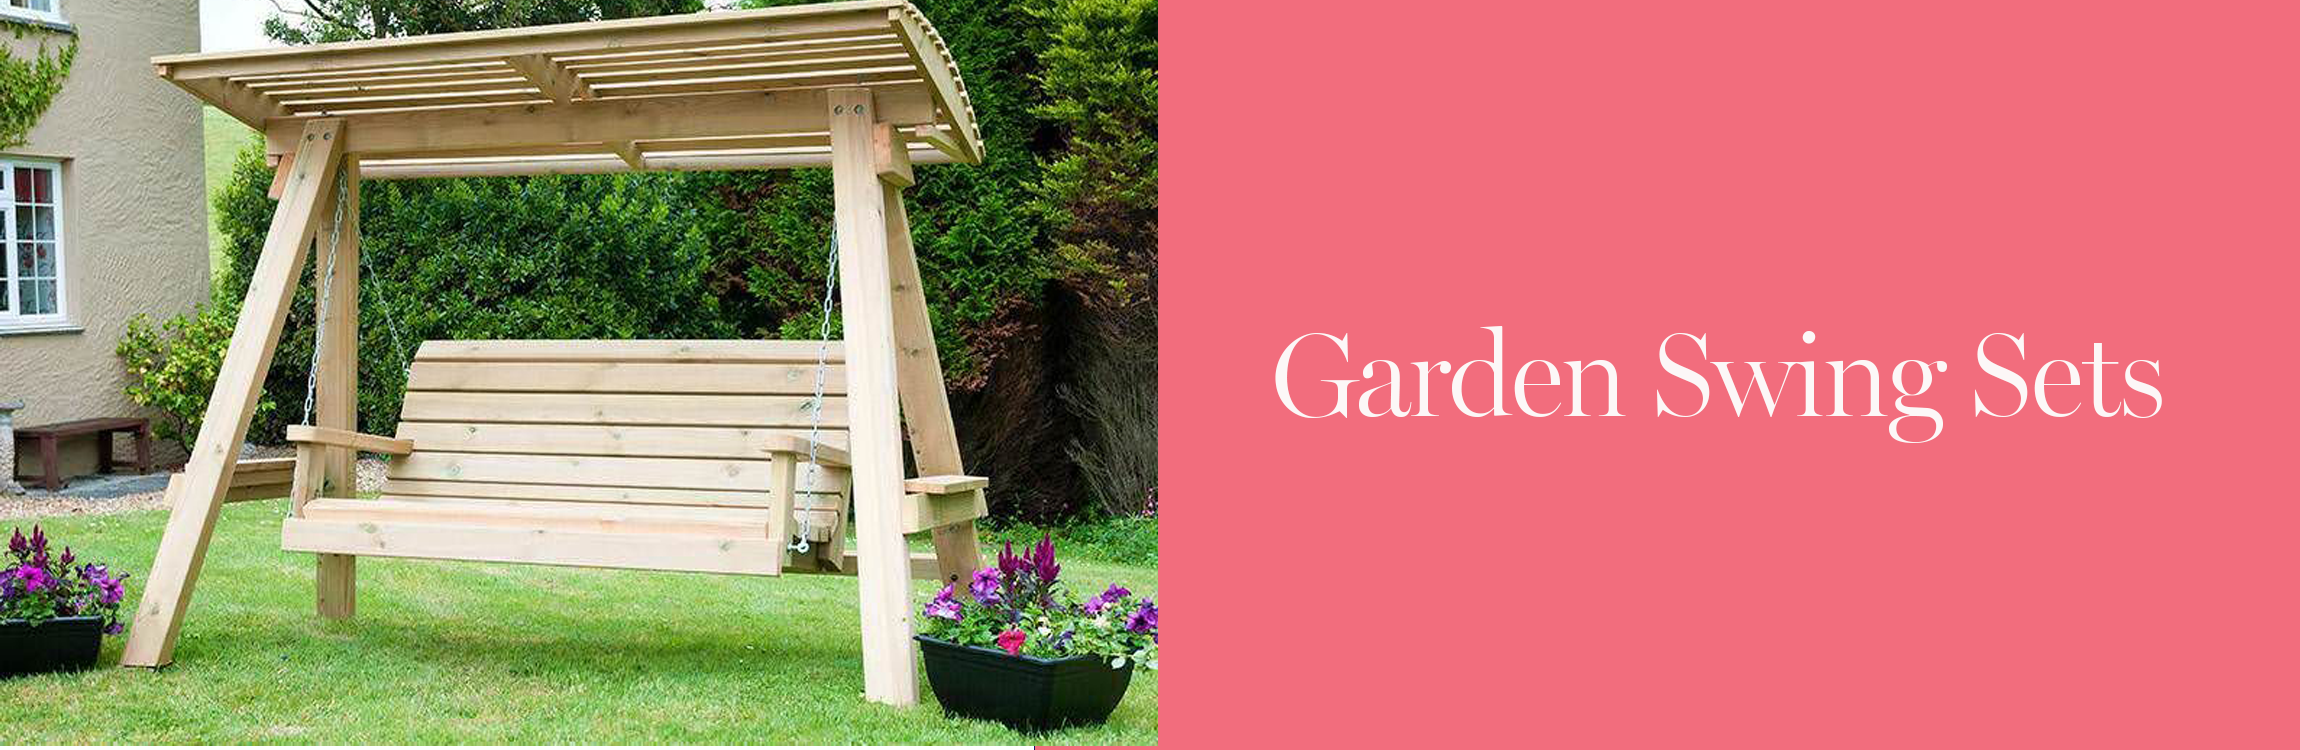 Garden Swing Seats - Sustainable Furniture